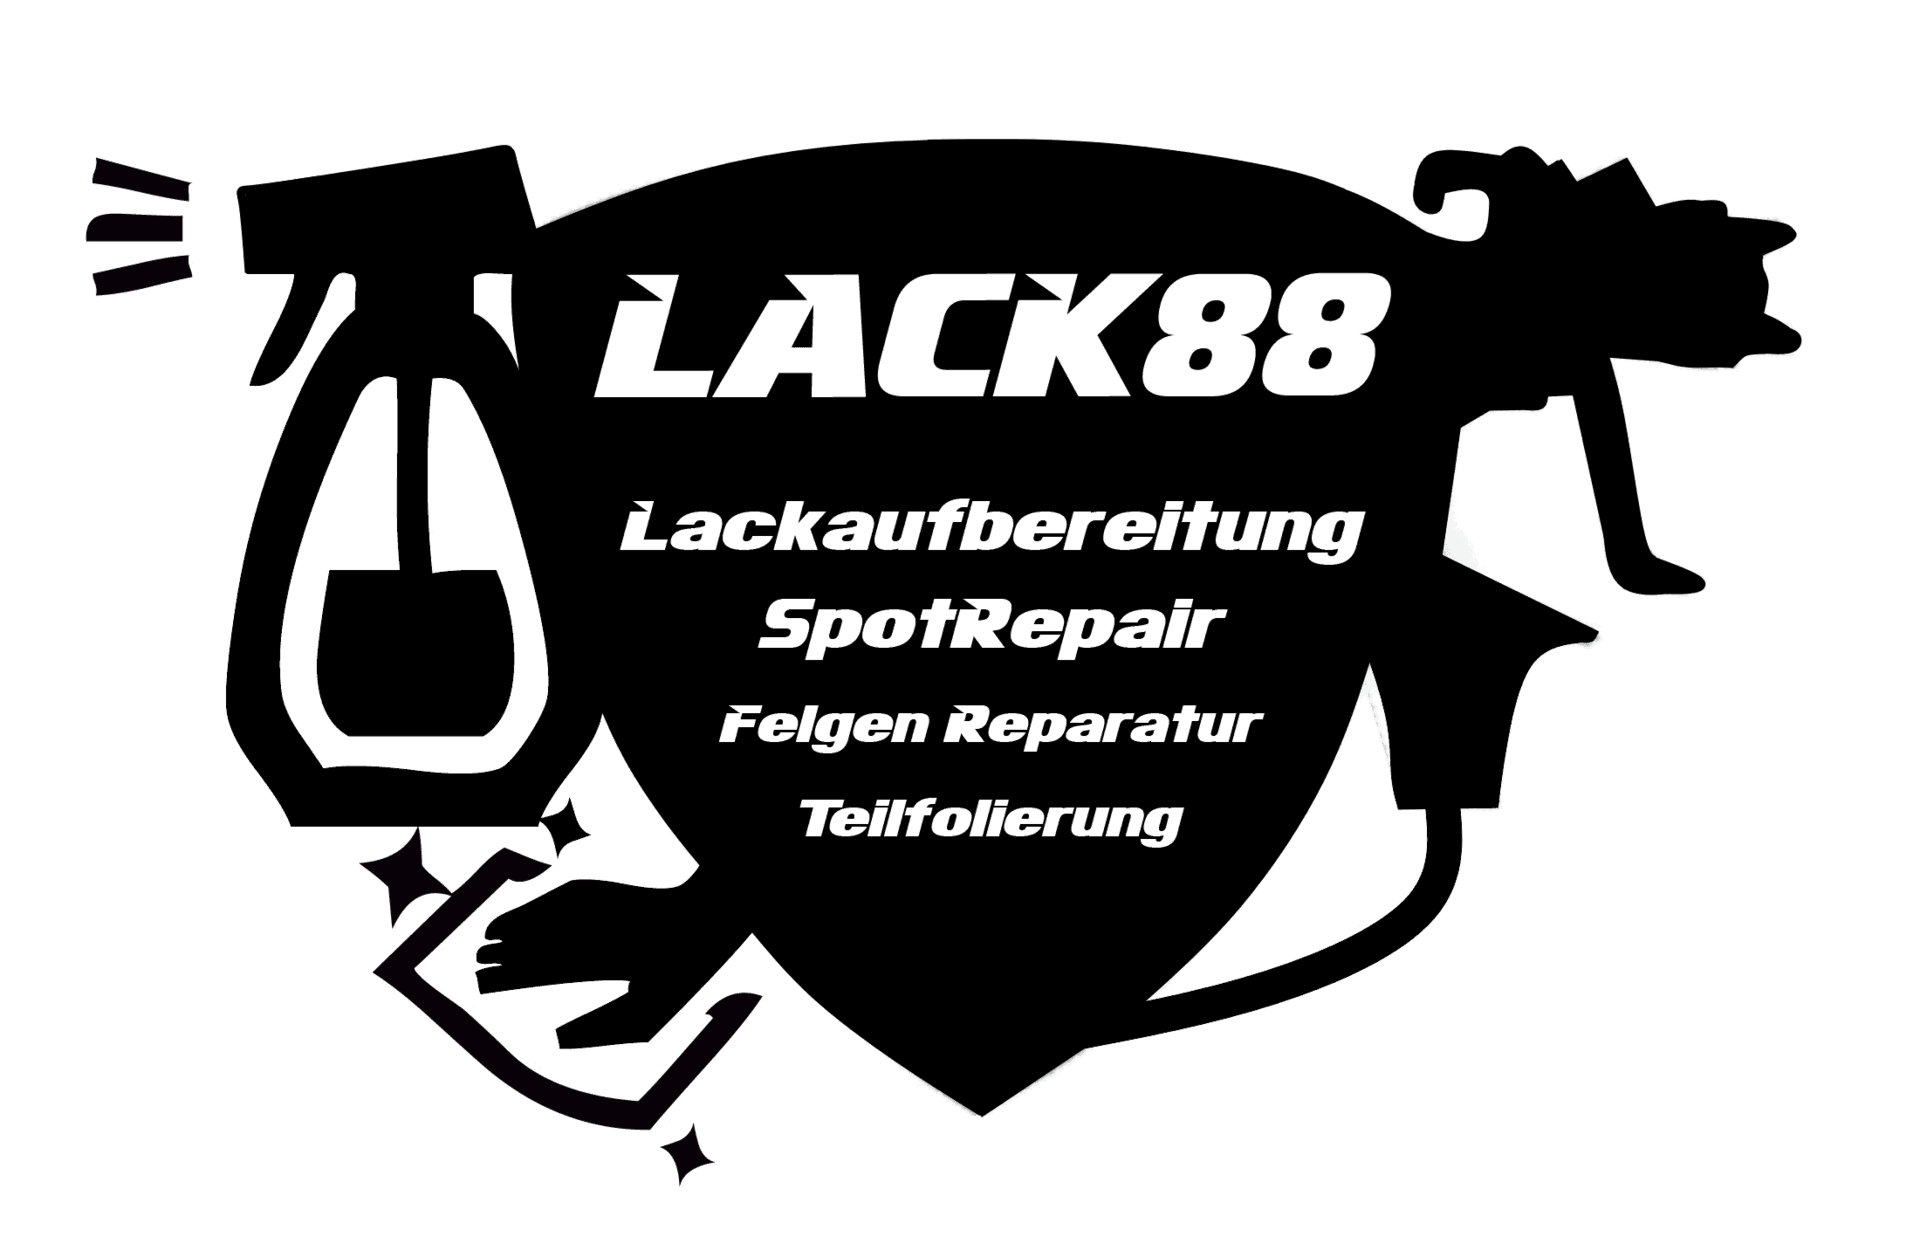 lack88 - Smartrepair - Felgenreparatur - Bordsteinschäden - Spotrepair - Fahrzeugaufbereitung - Lackierung